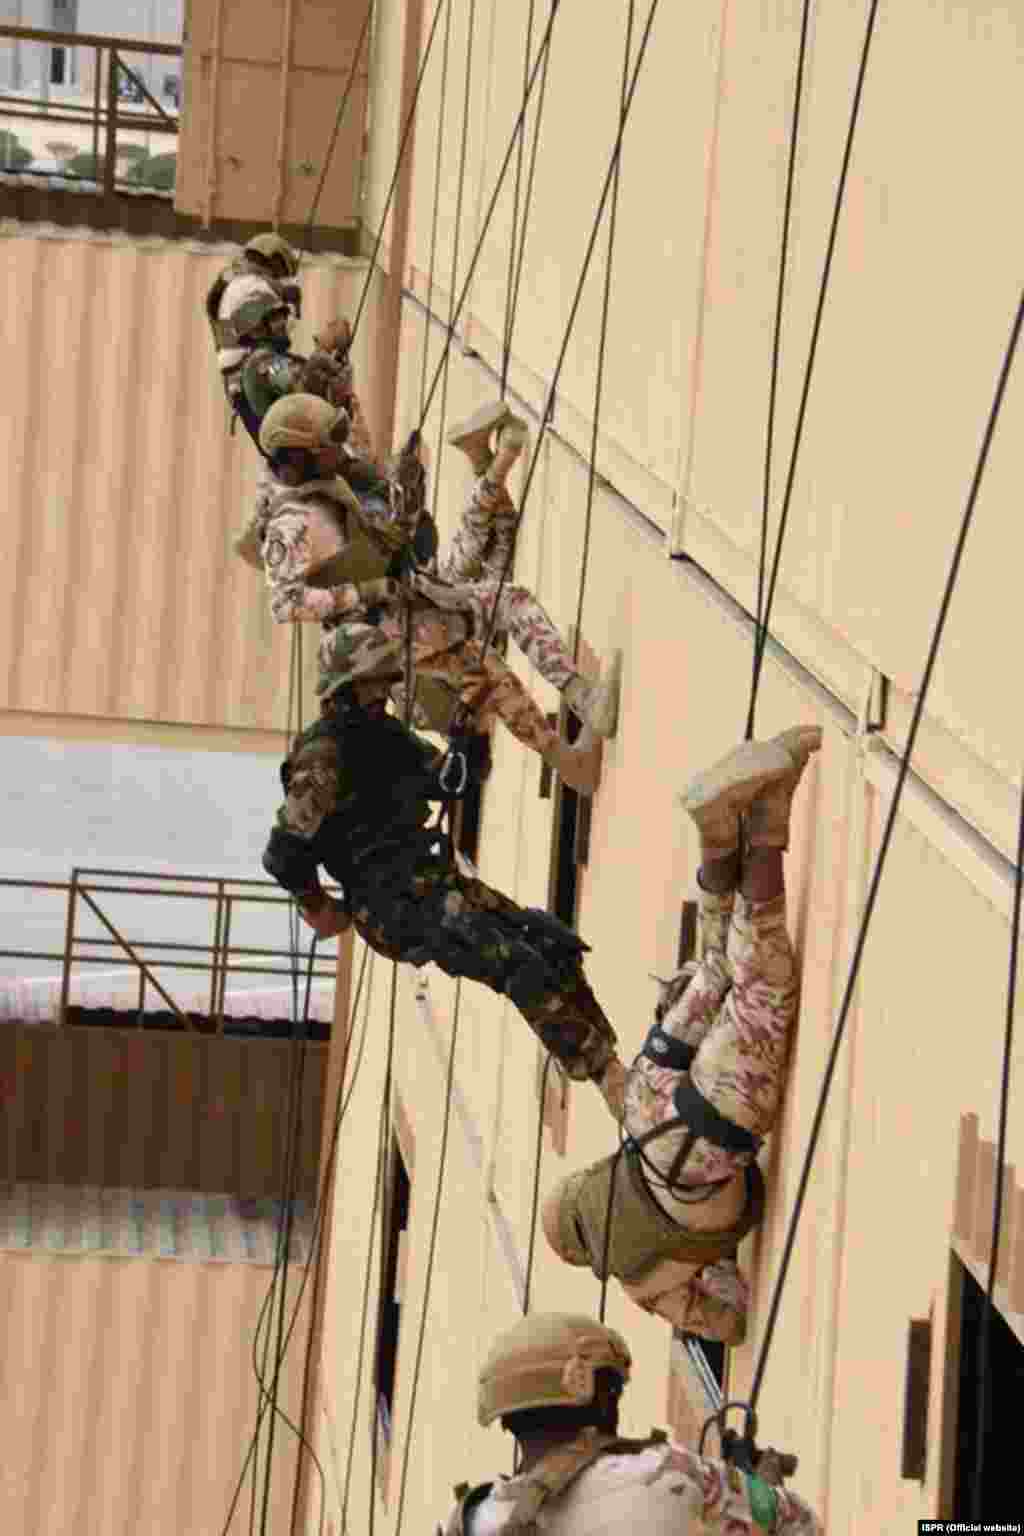 پرنس نائف سکیورٹی سٹی میں ہونے والی ان مشقوں میں شرکت کے لیے پاکستانی فوج کے کئی اعلیٰ افسران بھی سعودی عرب میں ہیں۔